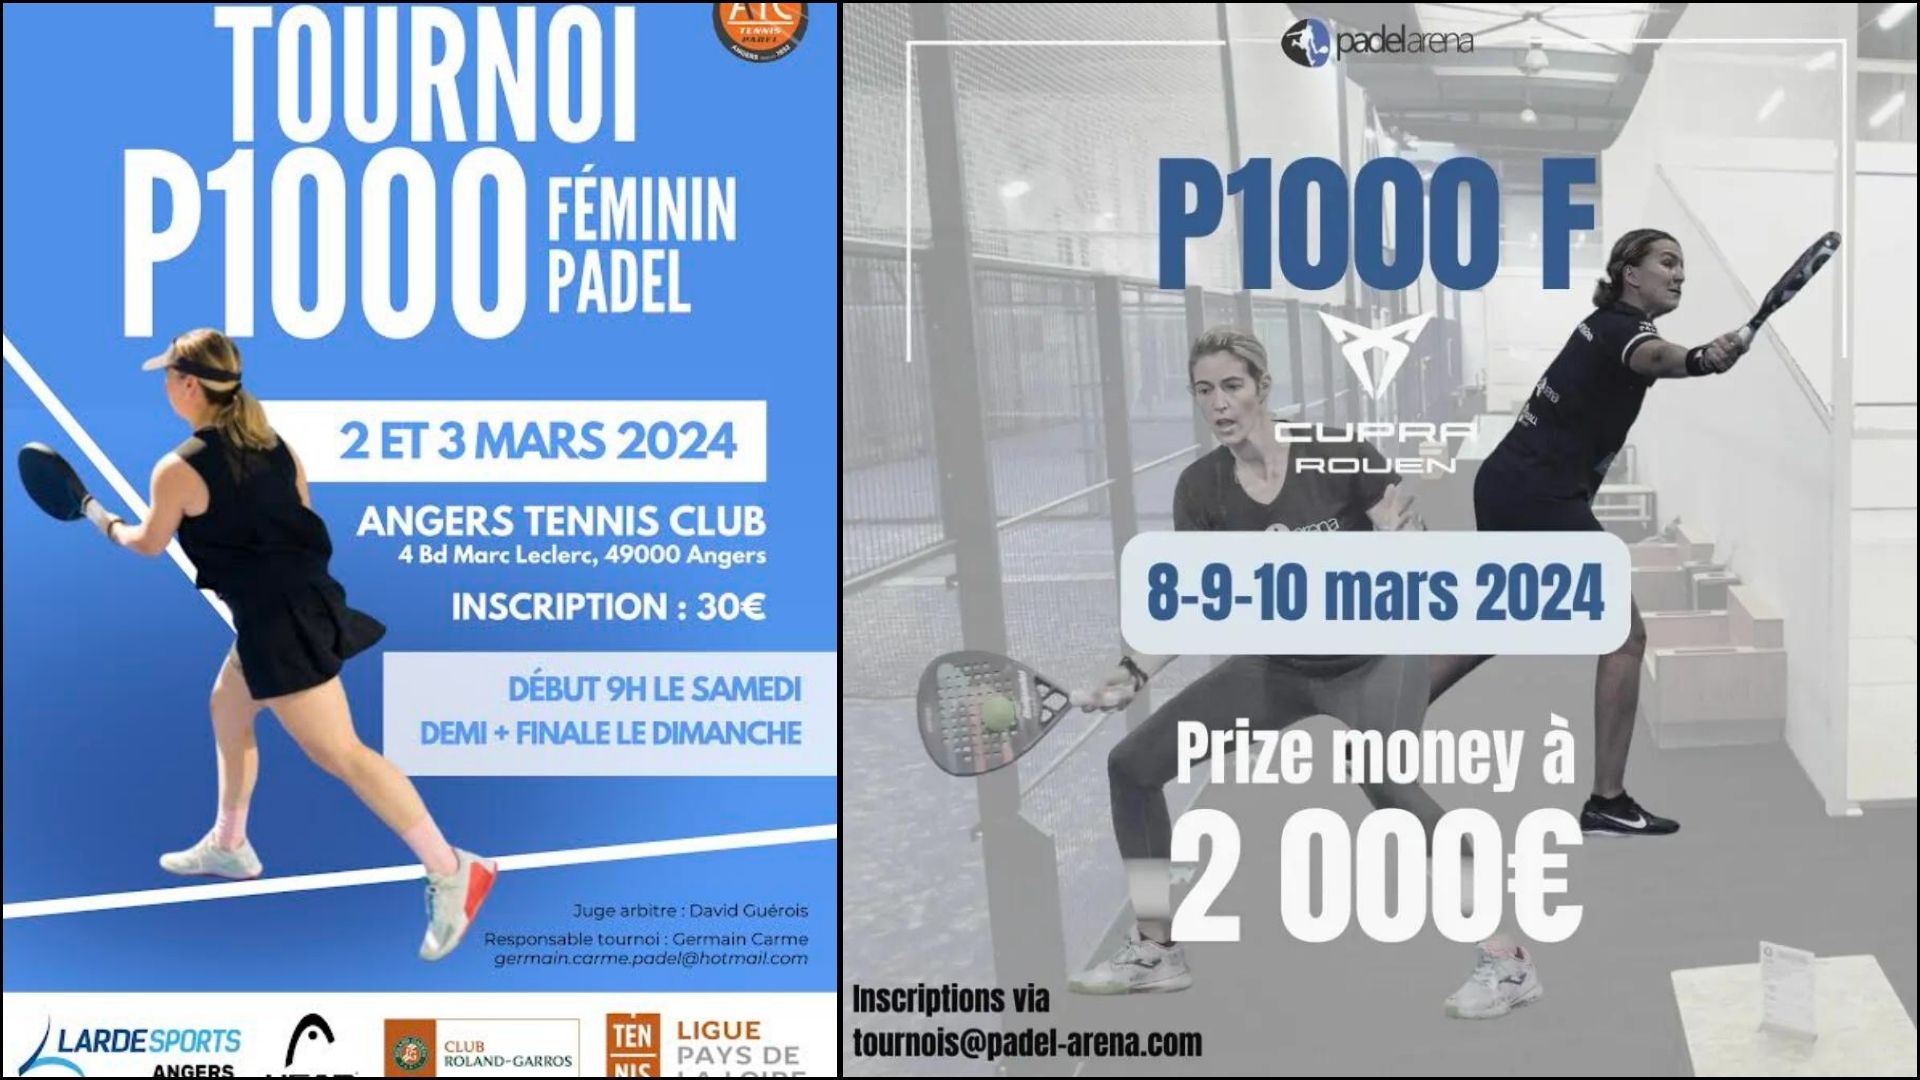 França – Dois P1000 100% femininos estão por vir!